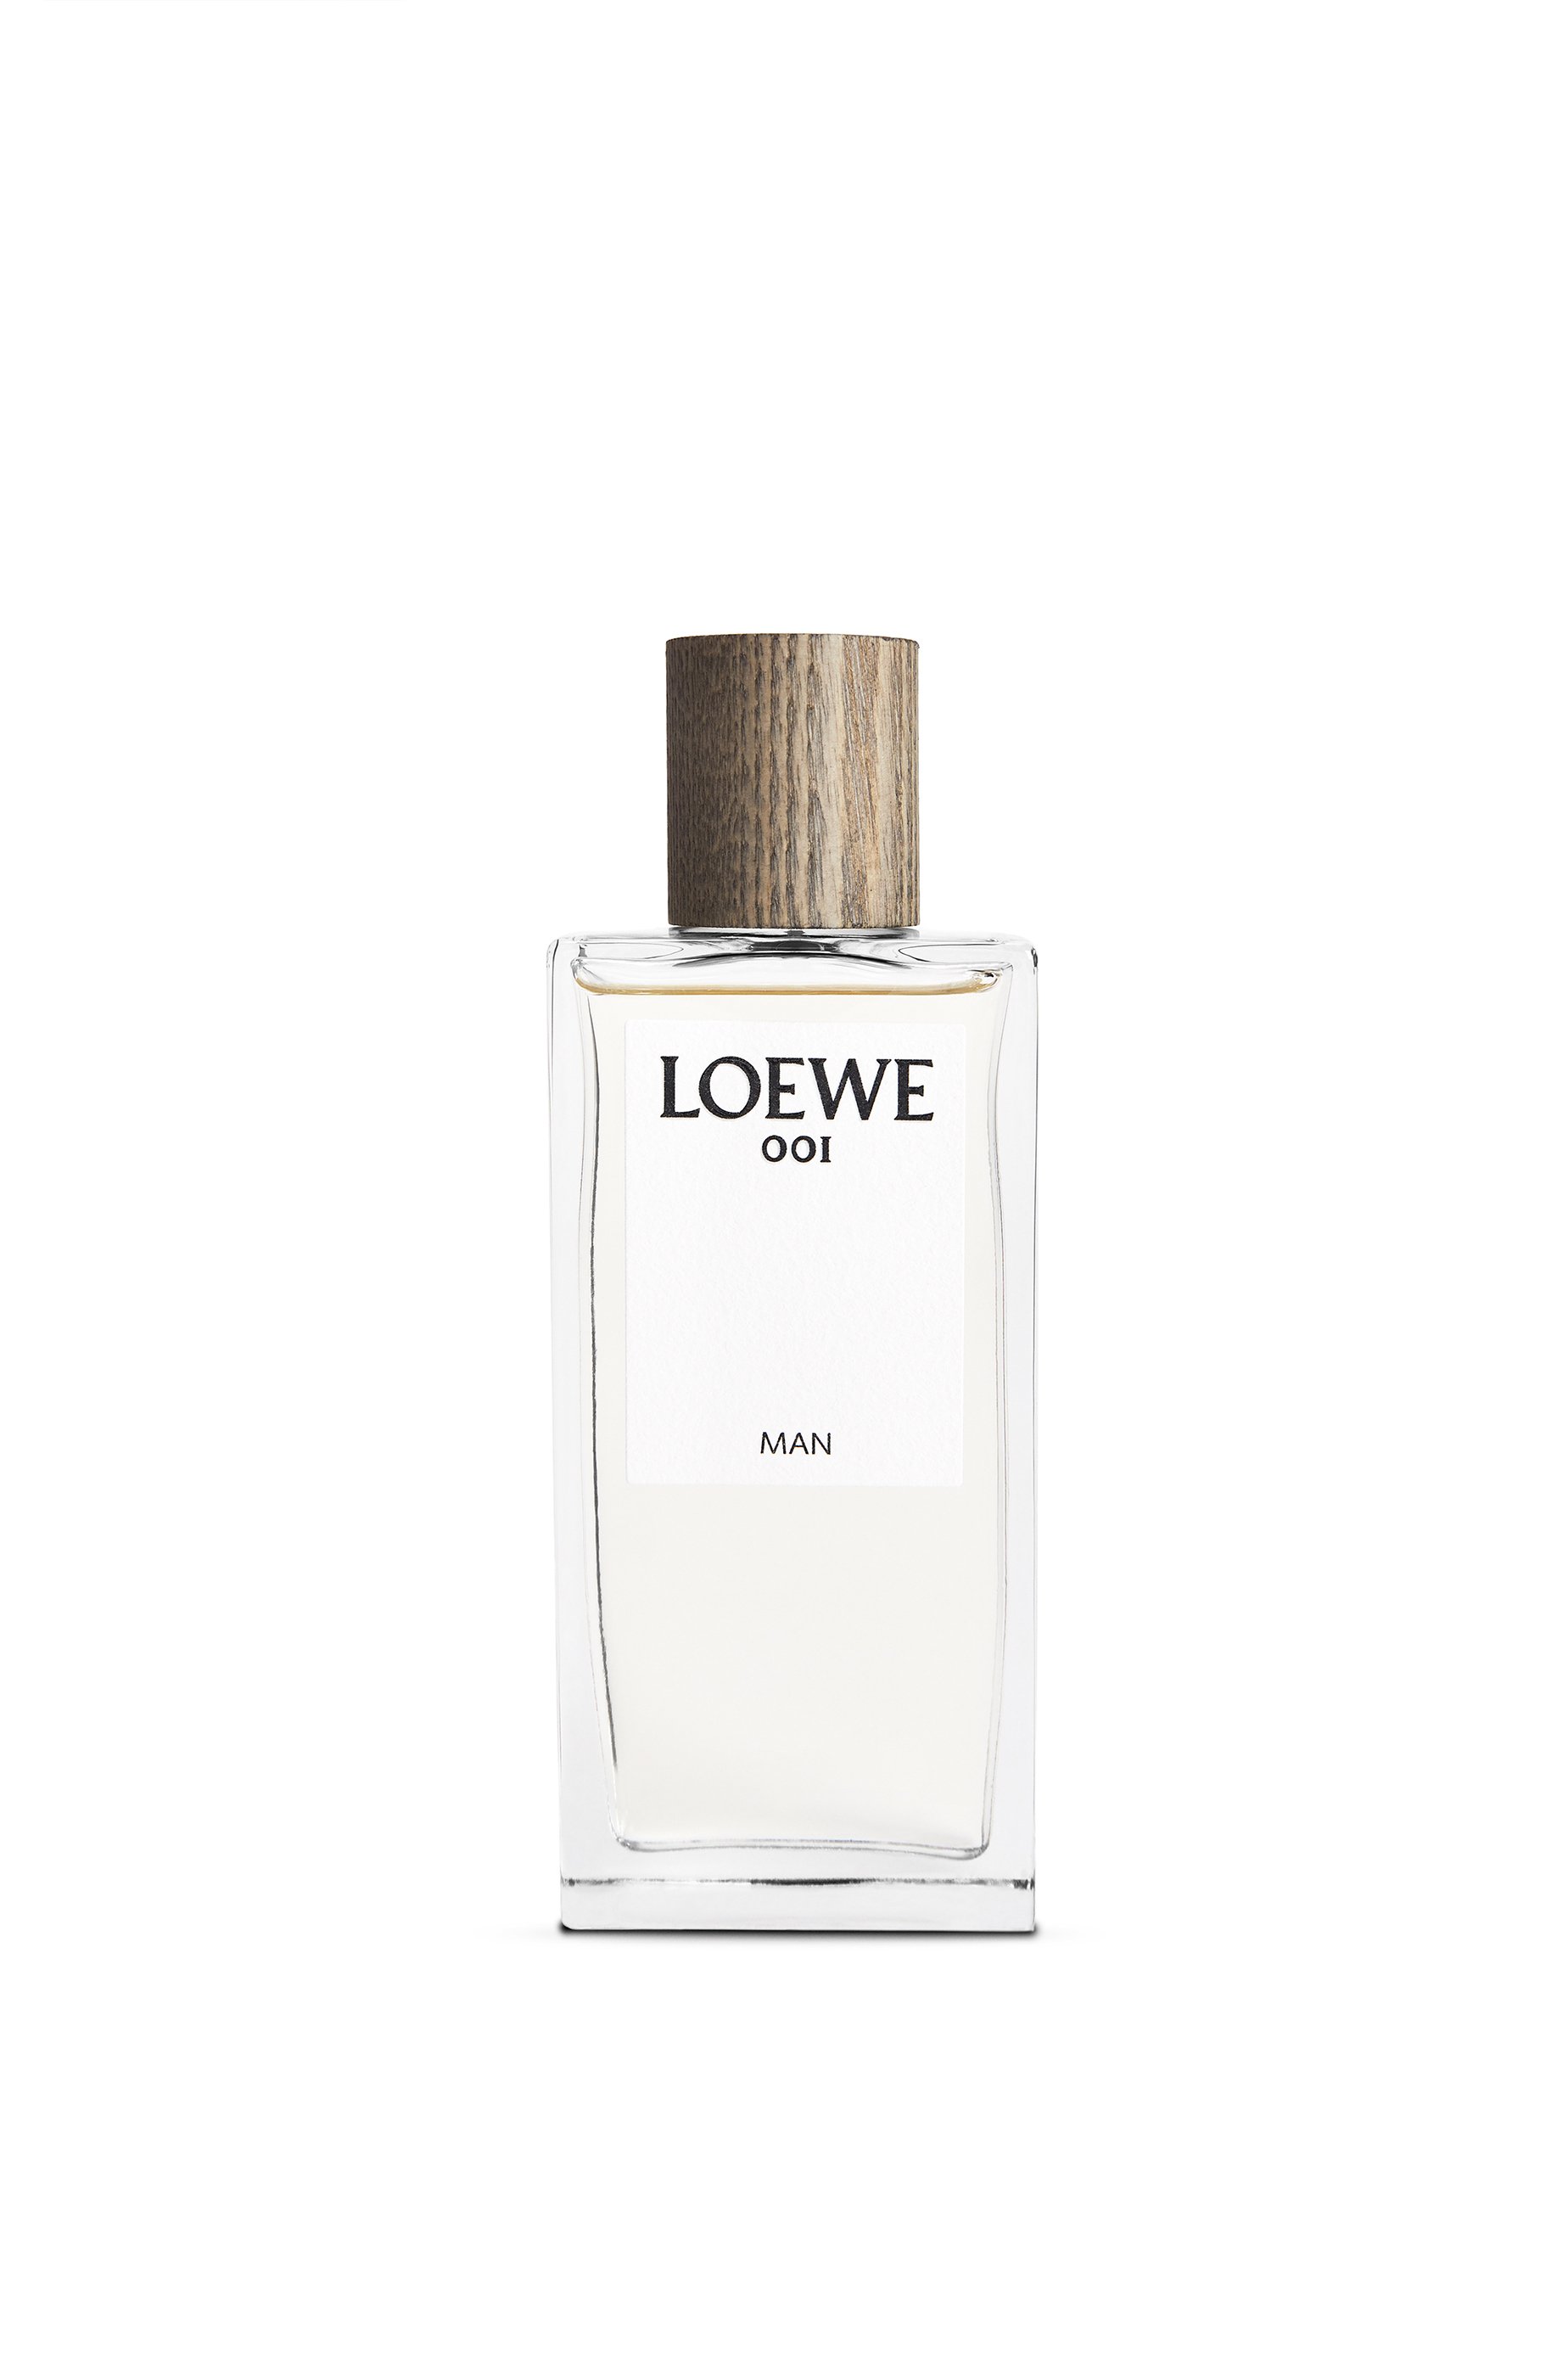 Loewe 001 Man Edp 100ml - LOEWE